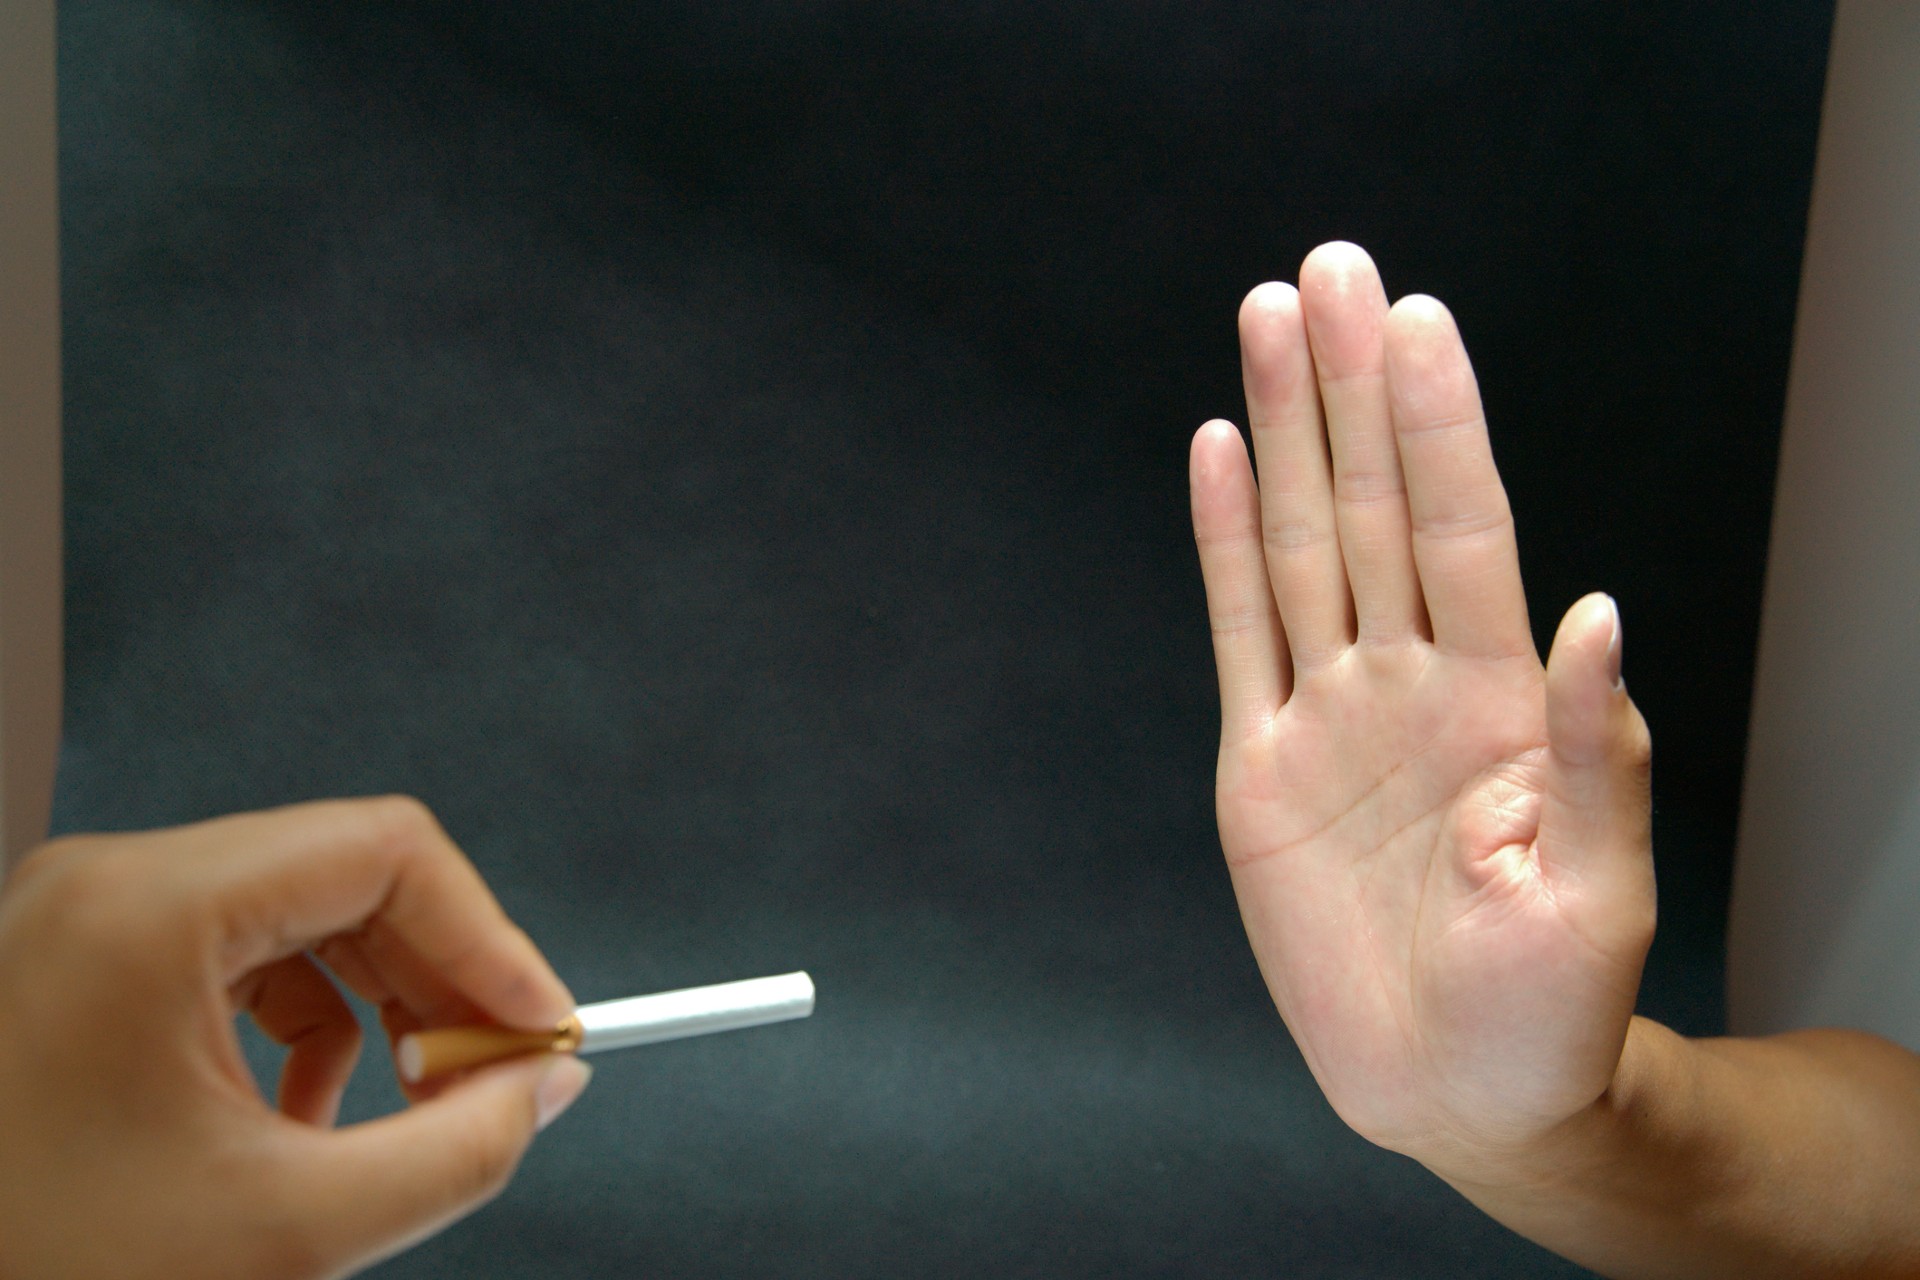 No Dia Mundial sem Tabaco, conheça mais sobre os malefícios do cigarro